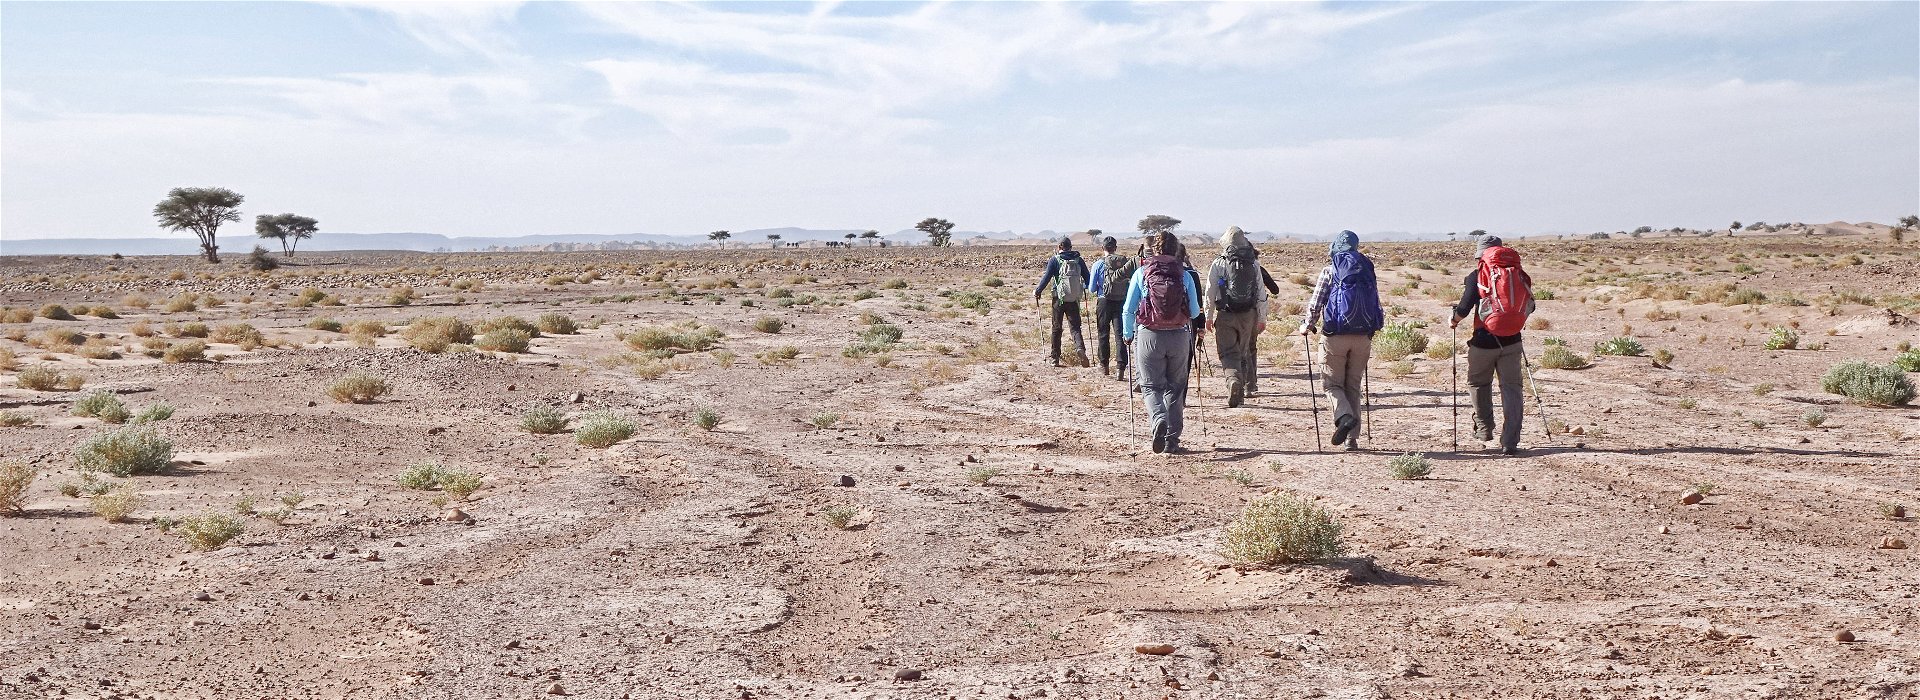 5 top destinations for a desert trek